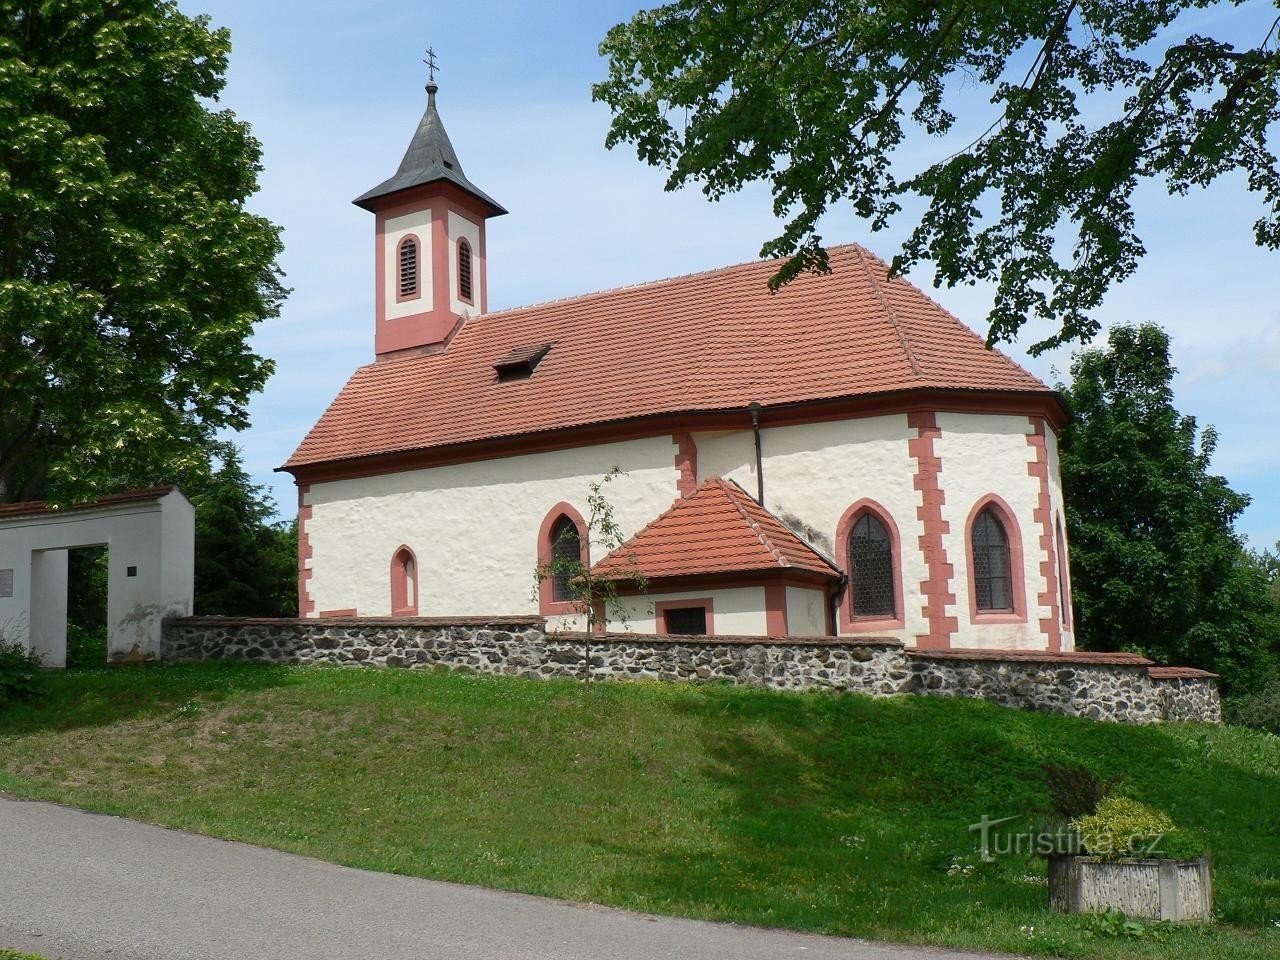 Zdemyslice, νότια πλευρά της εκκλησίας